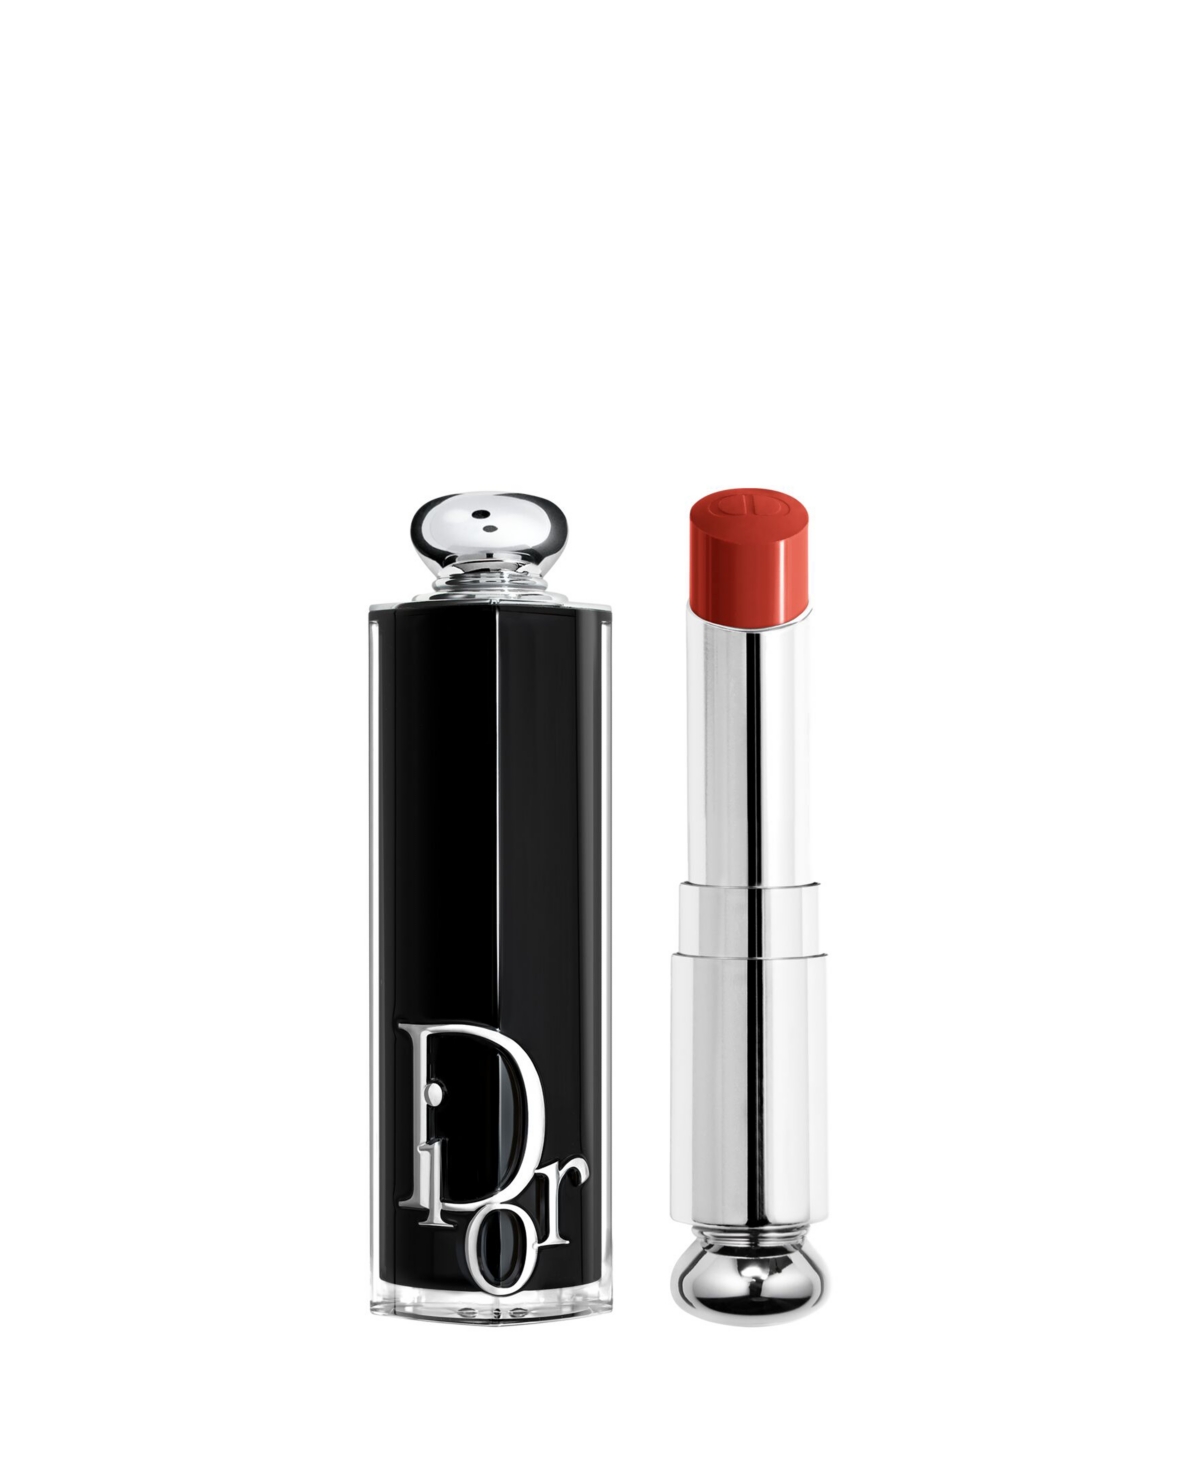 Dior Addict Refillable Shine Lipstick In Saddle (a Brick Red)